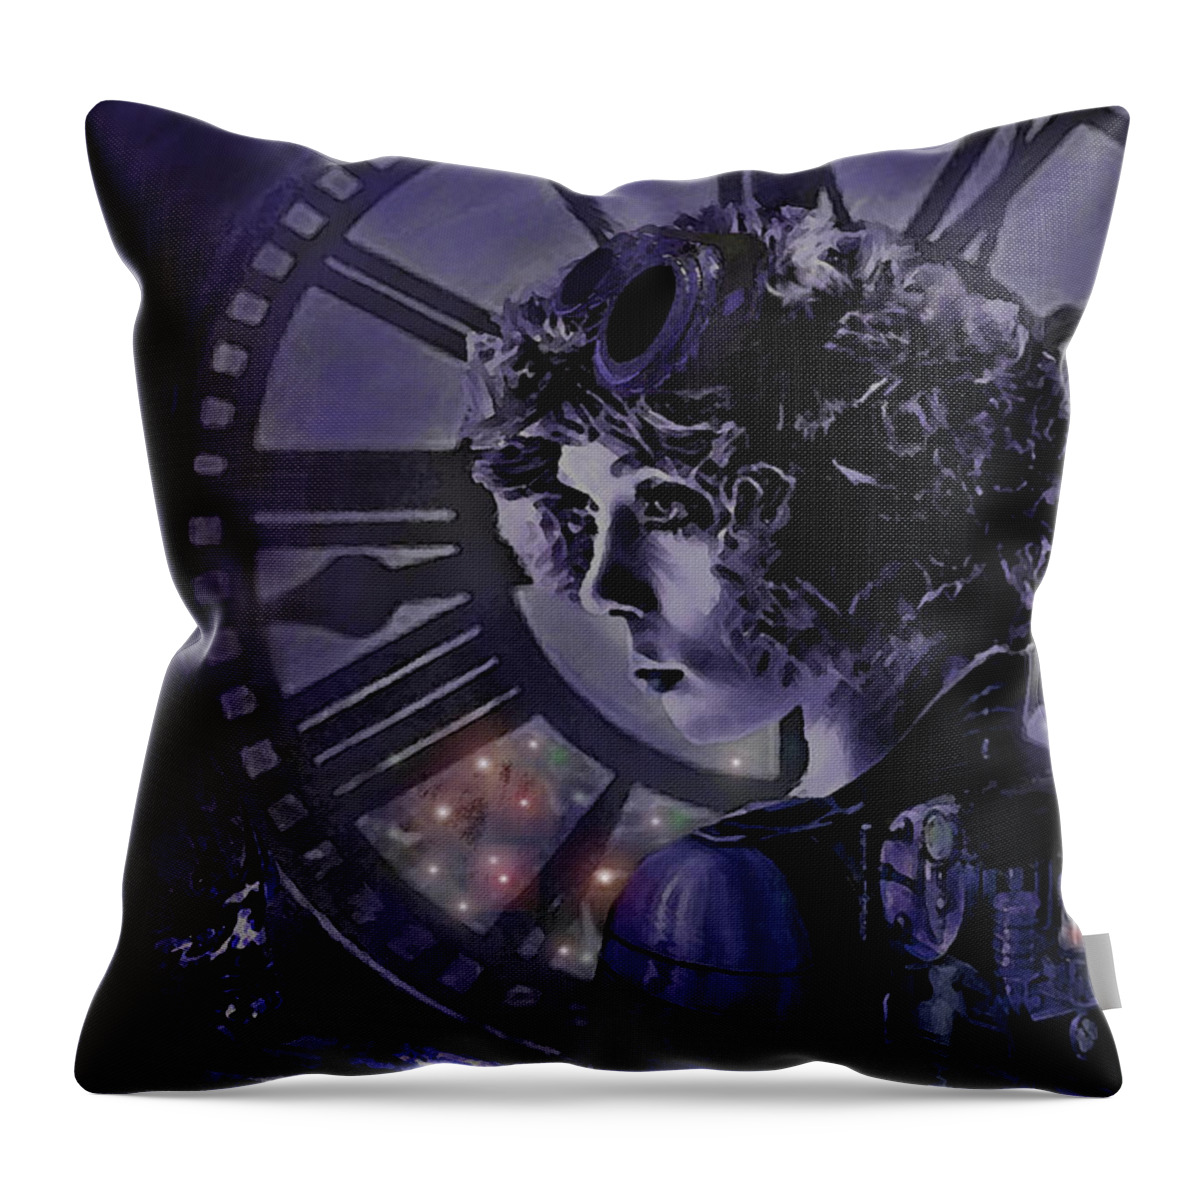 Steampunk Throw Pillow featuring the digital art Steampunk Midnight by Jane Schnetlage